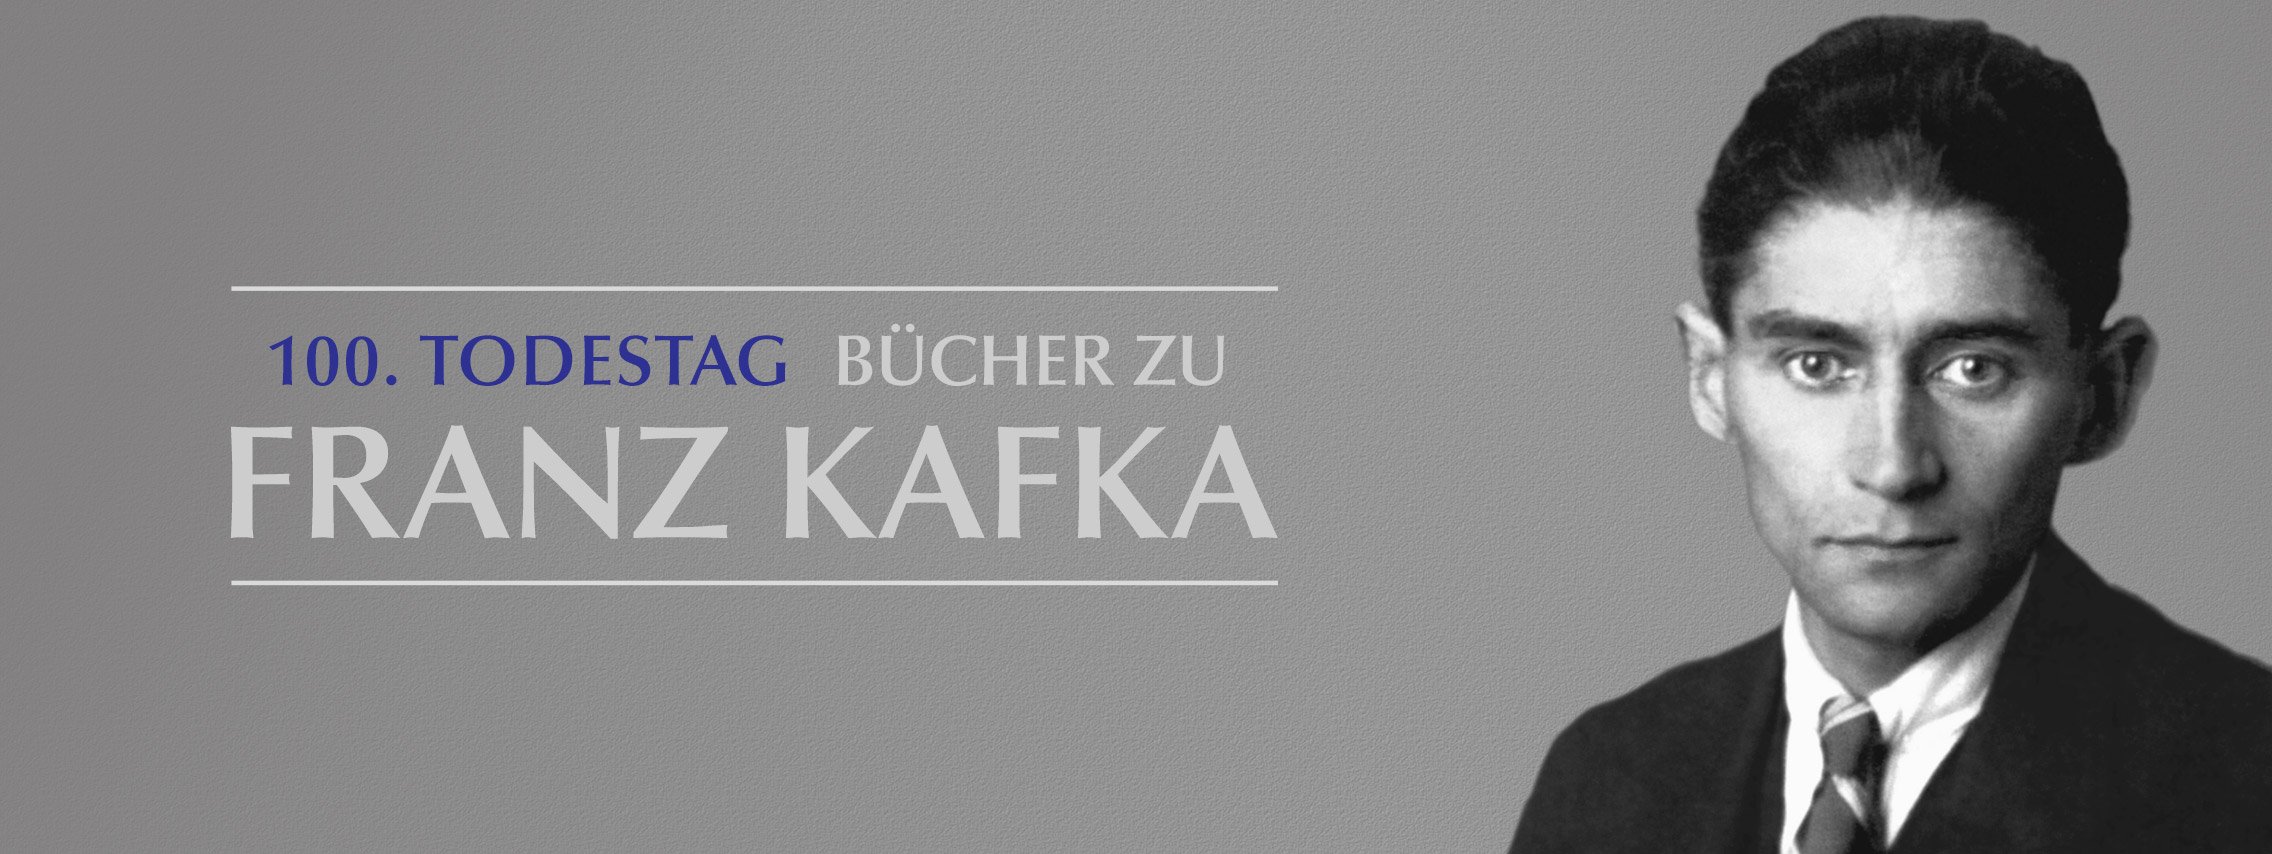 Franz Kafka - 100. Todestag